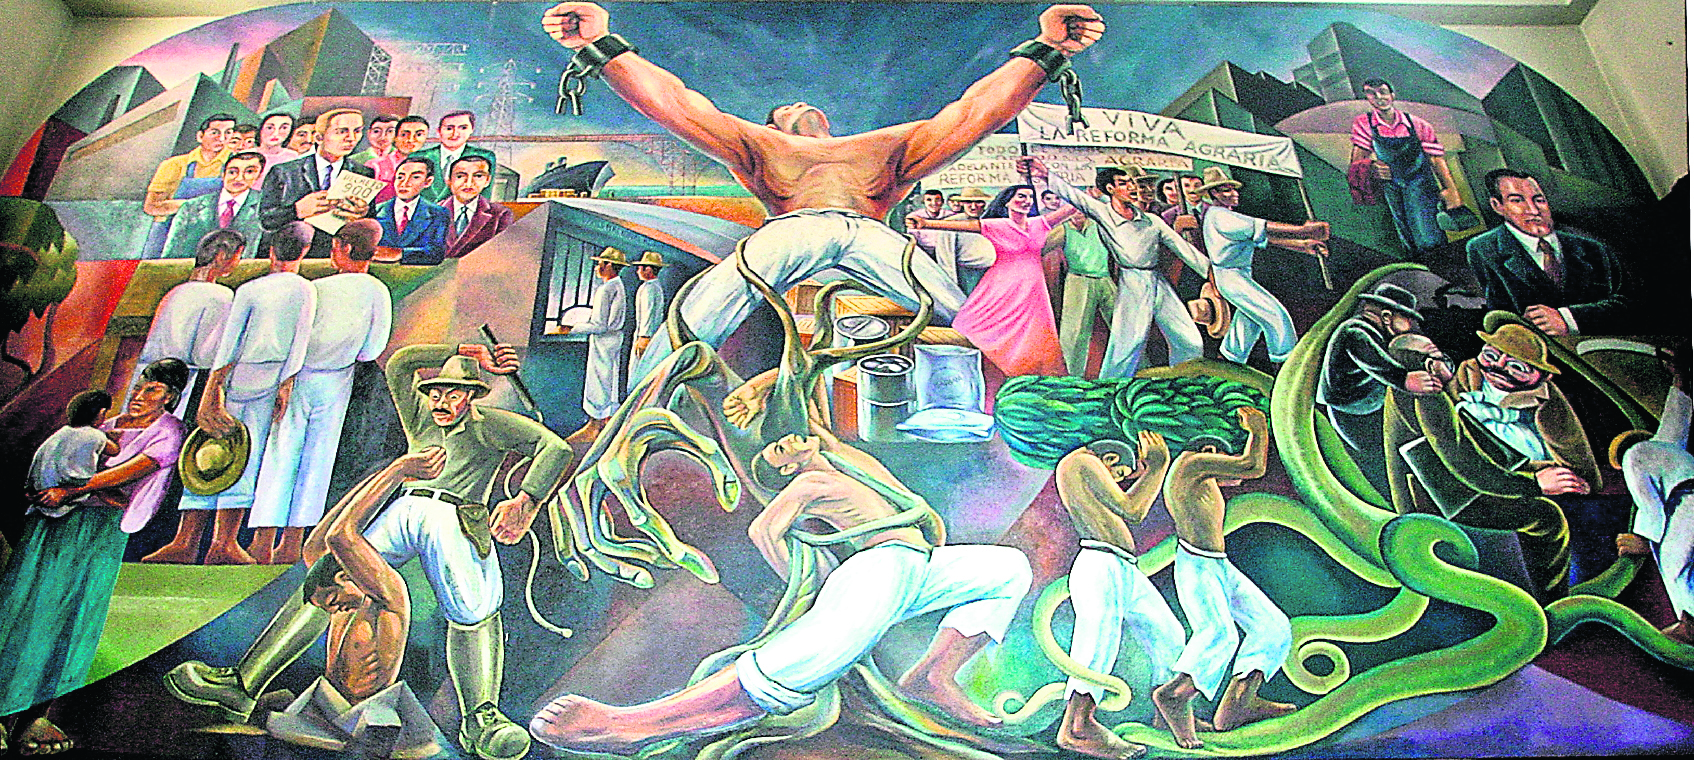 Mural conmemorativo de la Revolución de octubre de 1944. La obra fue pintada en 1952 y está ubicada en el Congreso de la República de Guatemala. Pintado por el artista guatemalteco, Víctor Aragón. (Foto Prensa Libre: Hemeroteca PL)